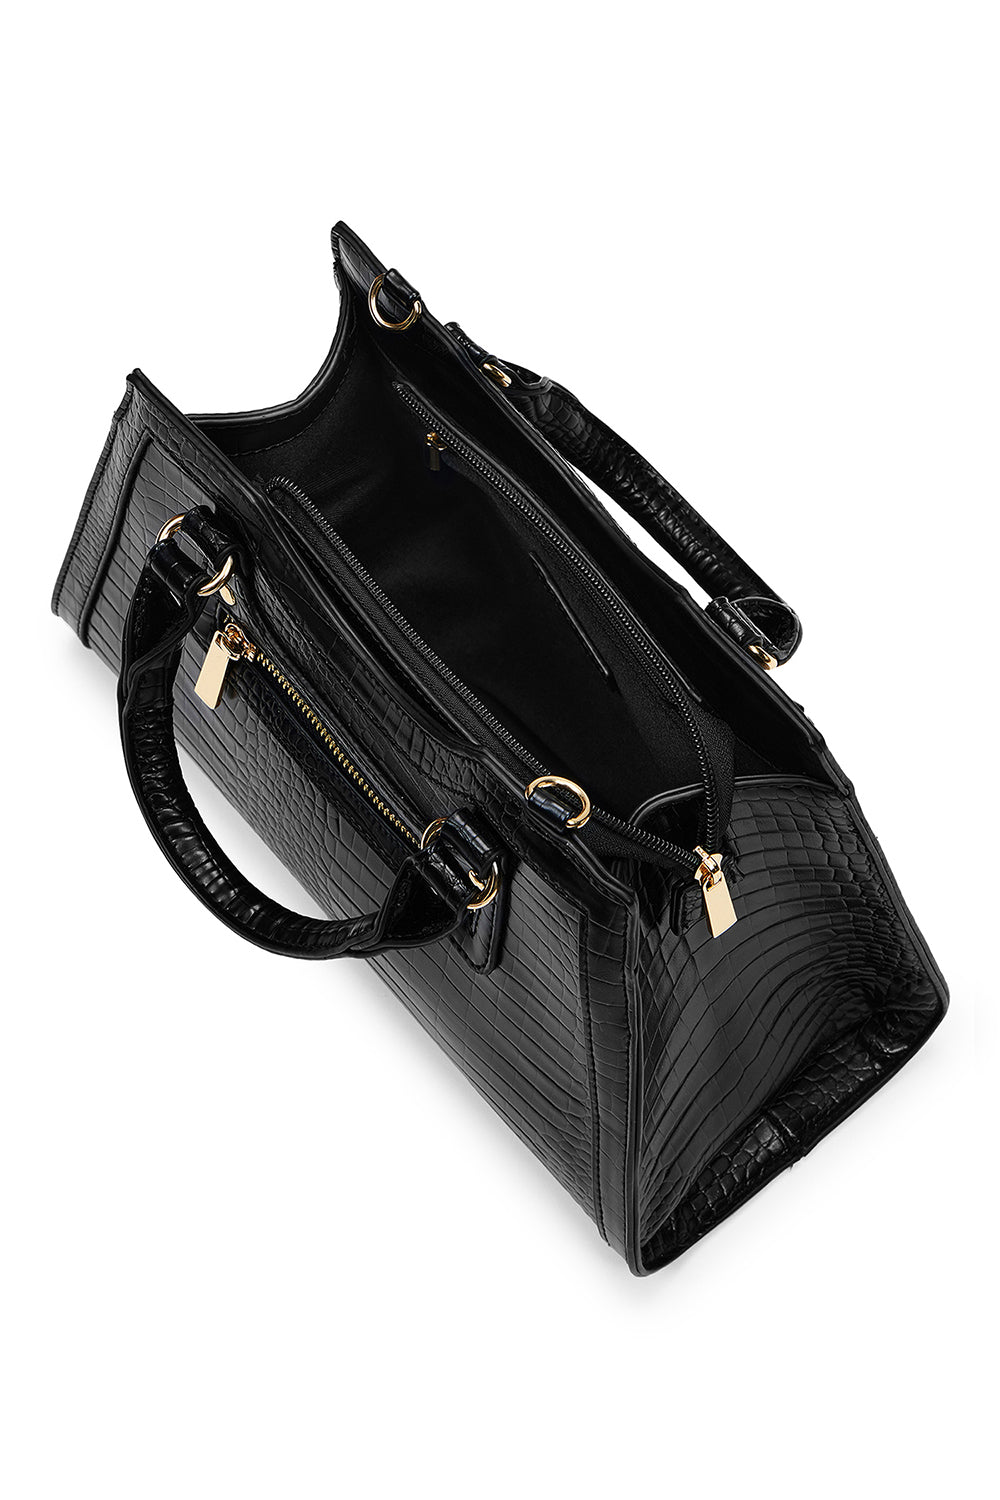 Willow Black Handbag